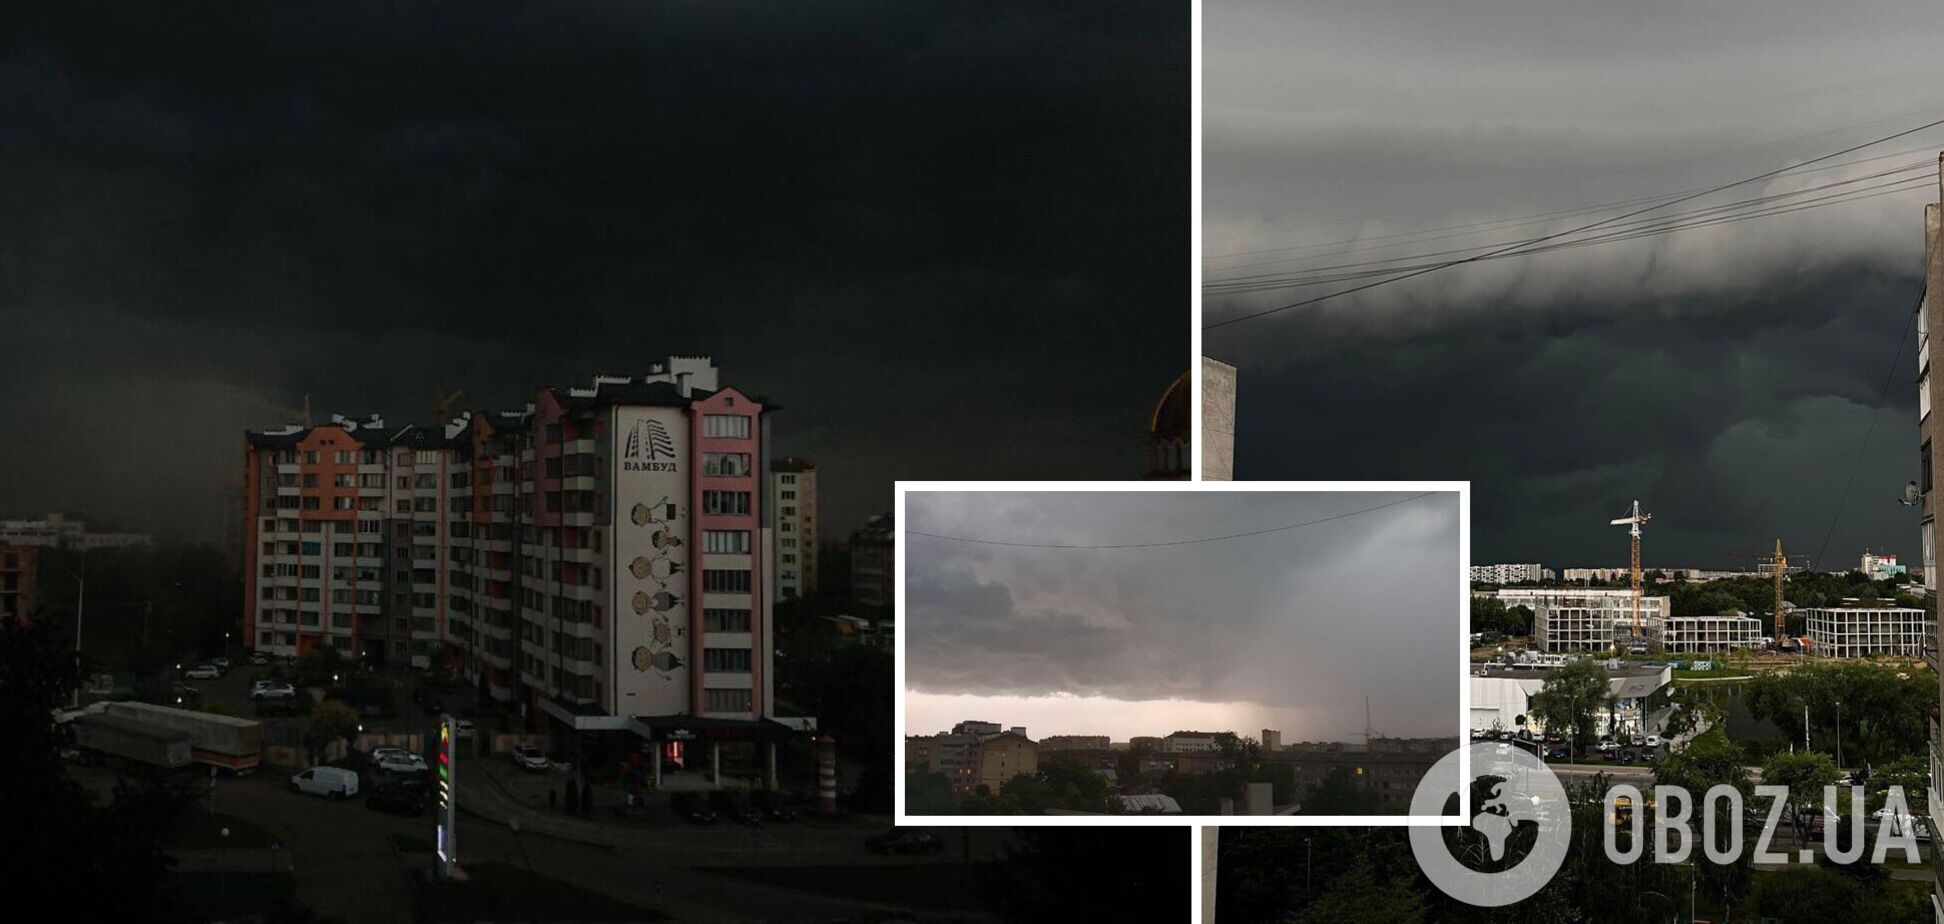 Будто апокалипсис: запад Украины накрыла страшная гроза. Фото и видео